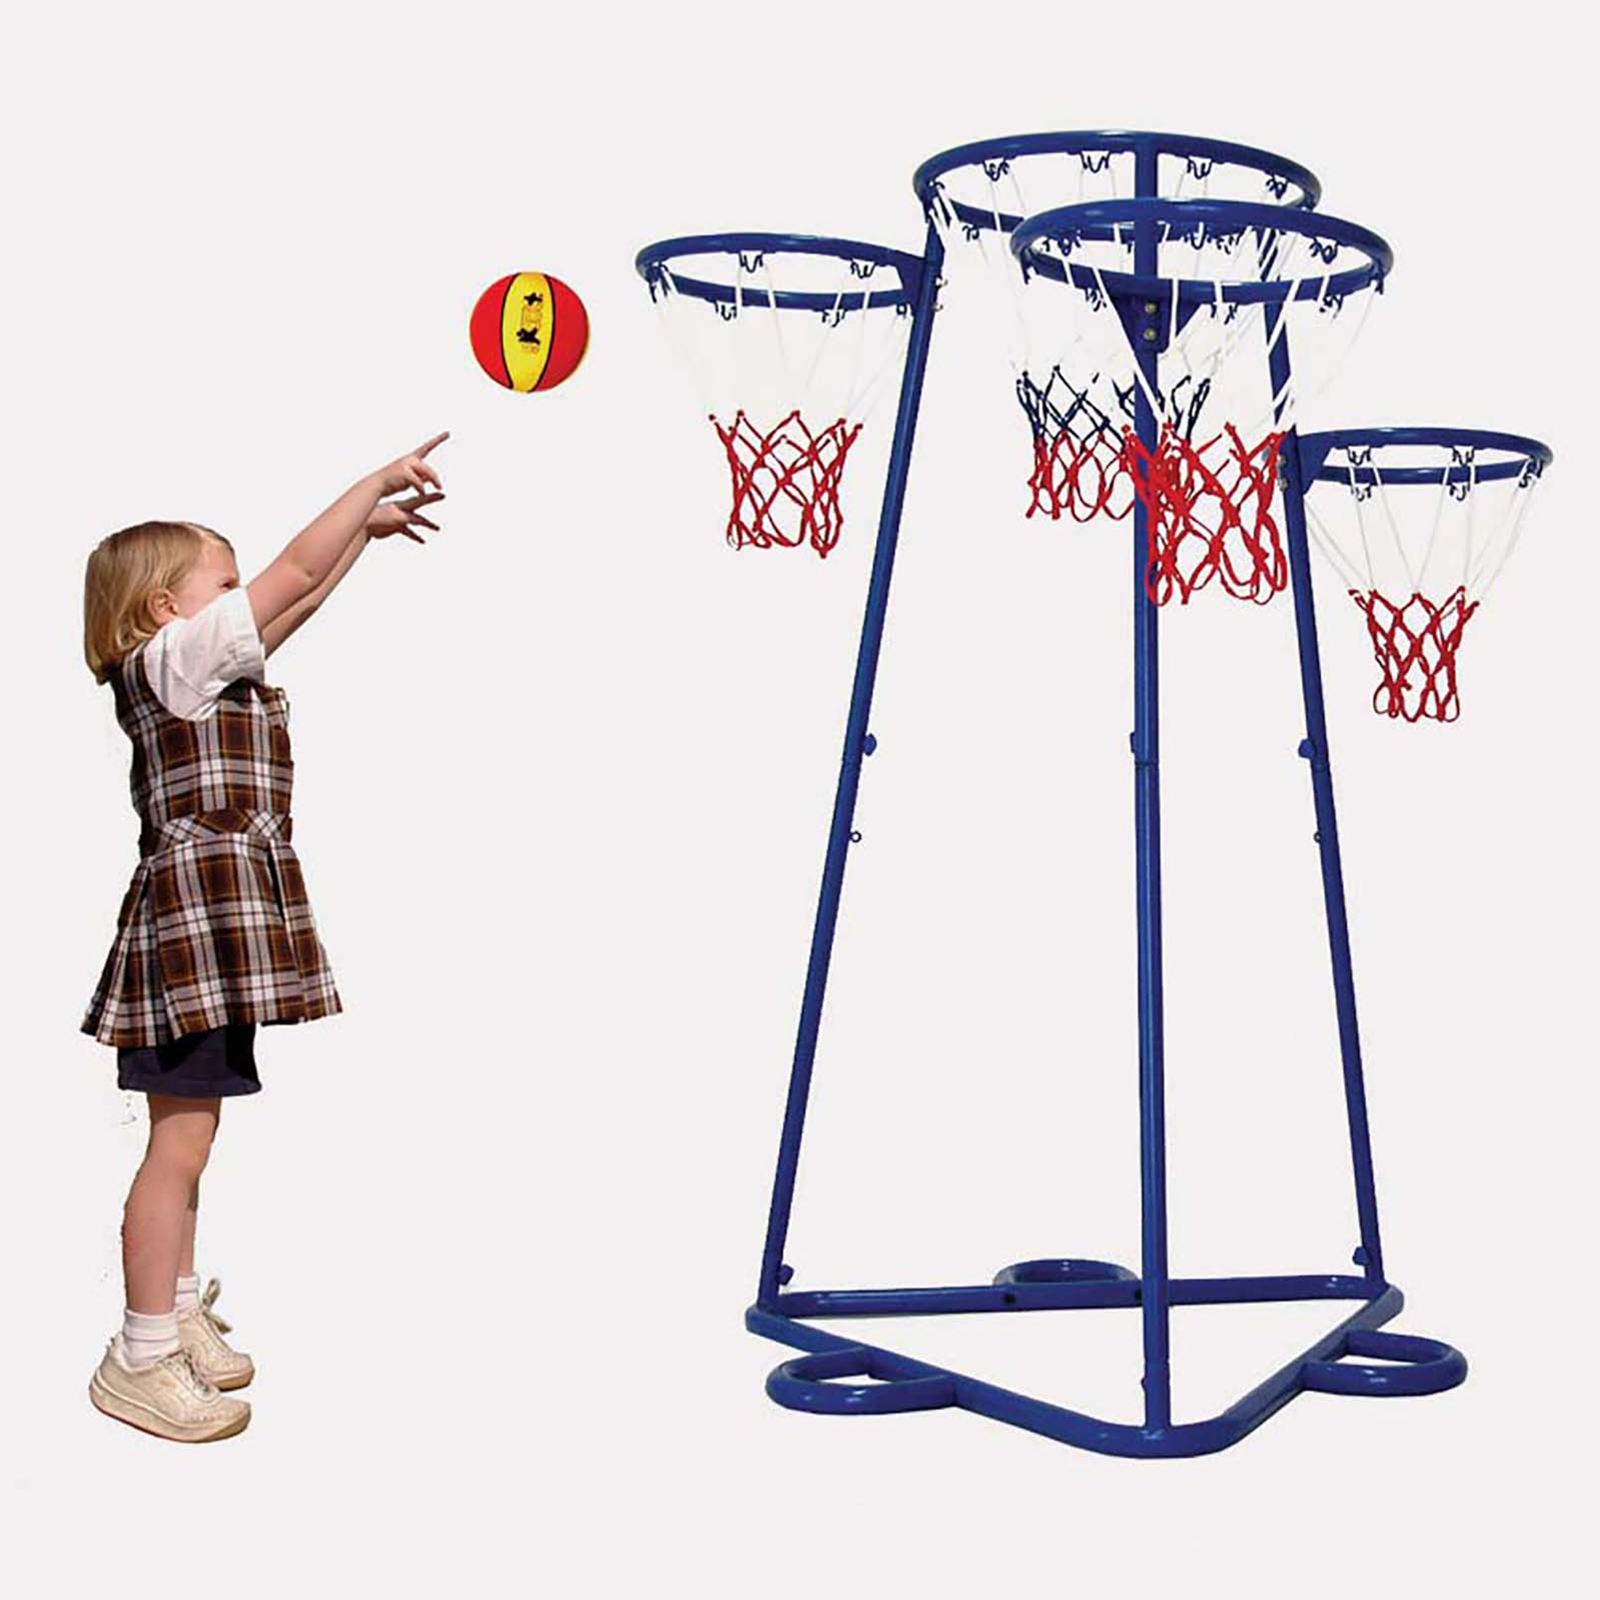 Four Hoop Basketball Net